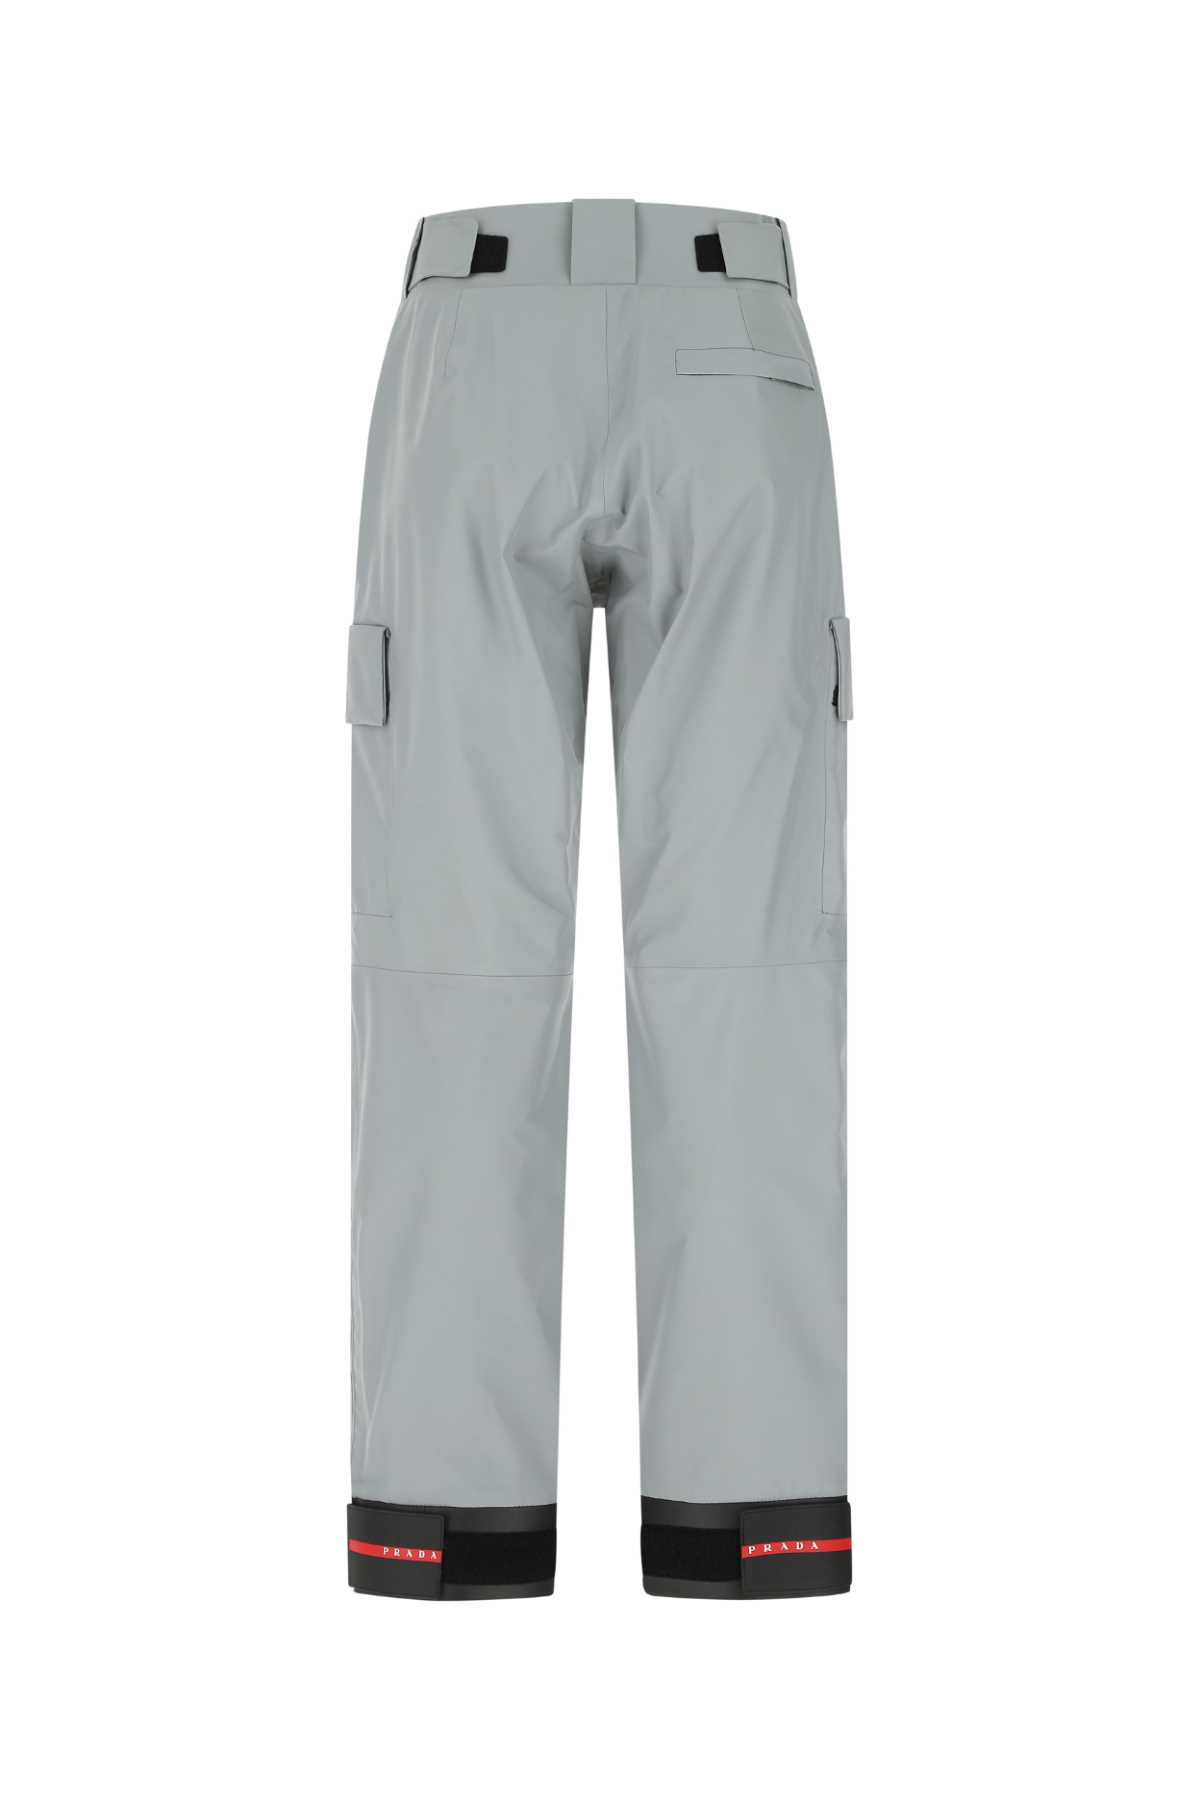 Prada Grey Gore-texâ® Snowboard Trouser In F0024